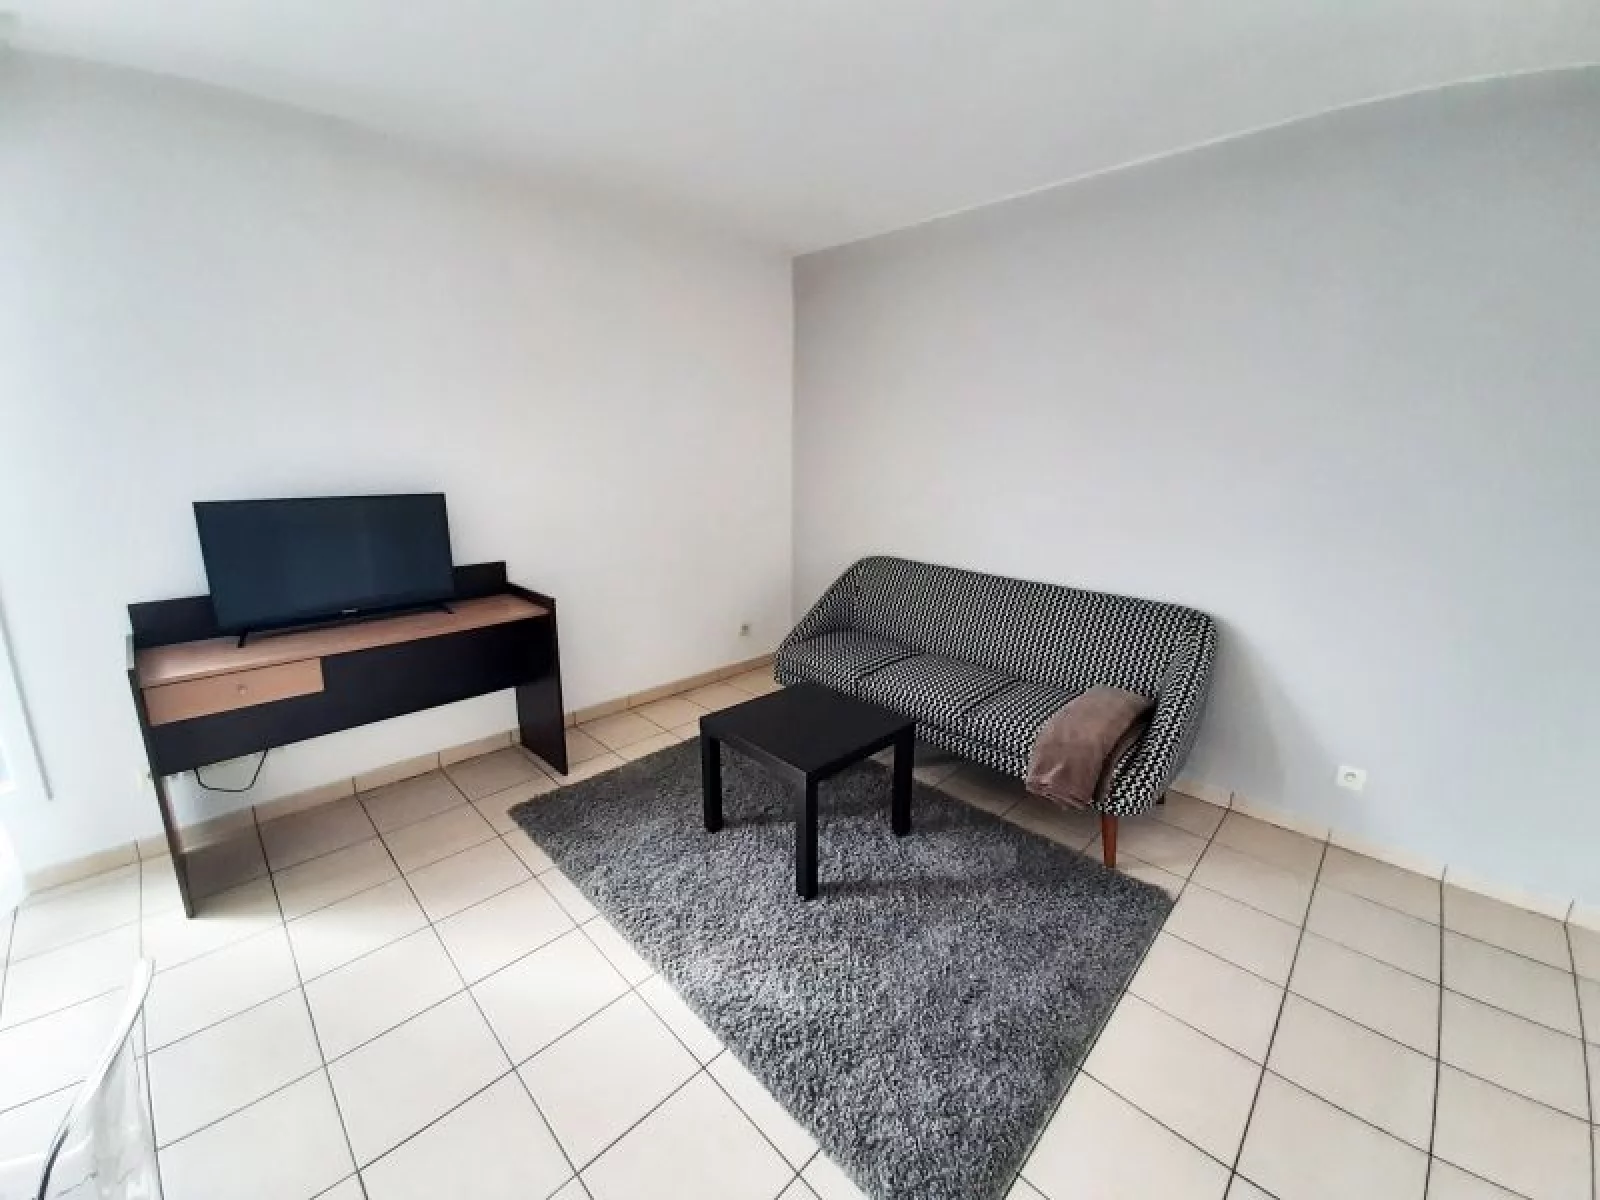 Location appartement meublé 2 pièces 43m² (Paris est - Bry sur Marne)